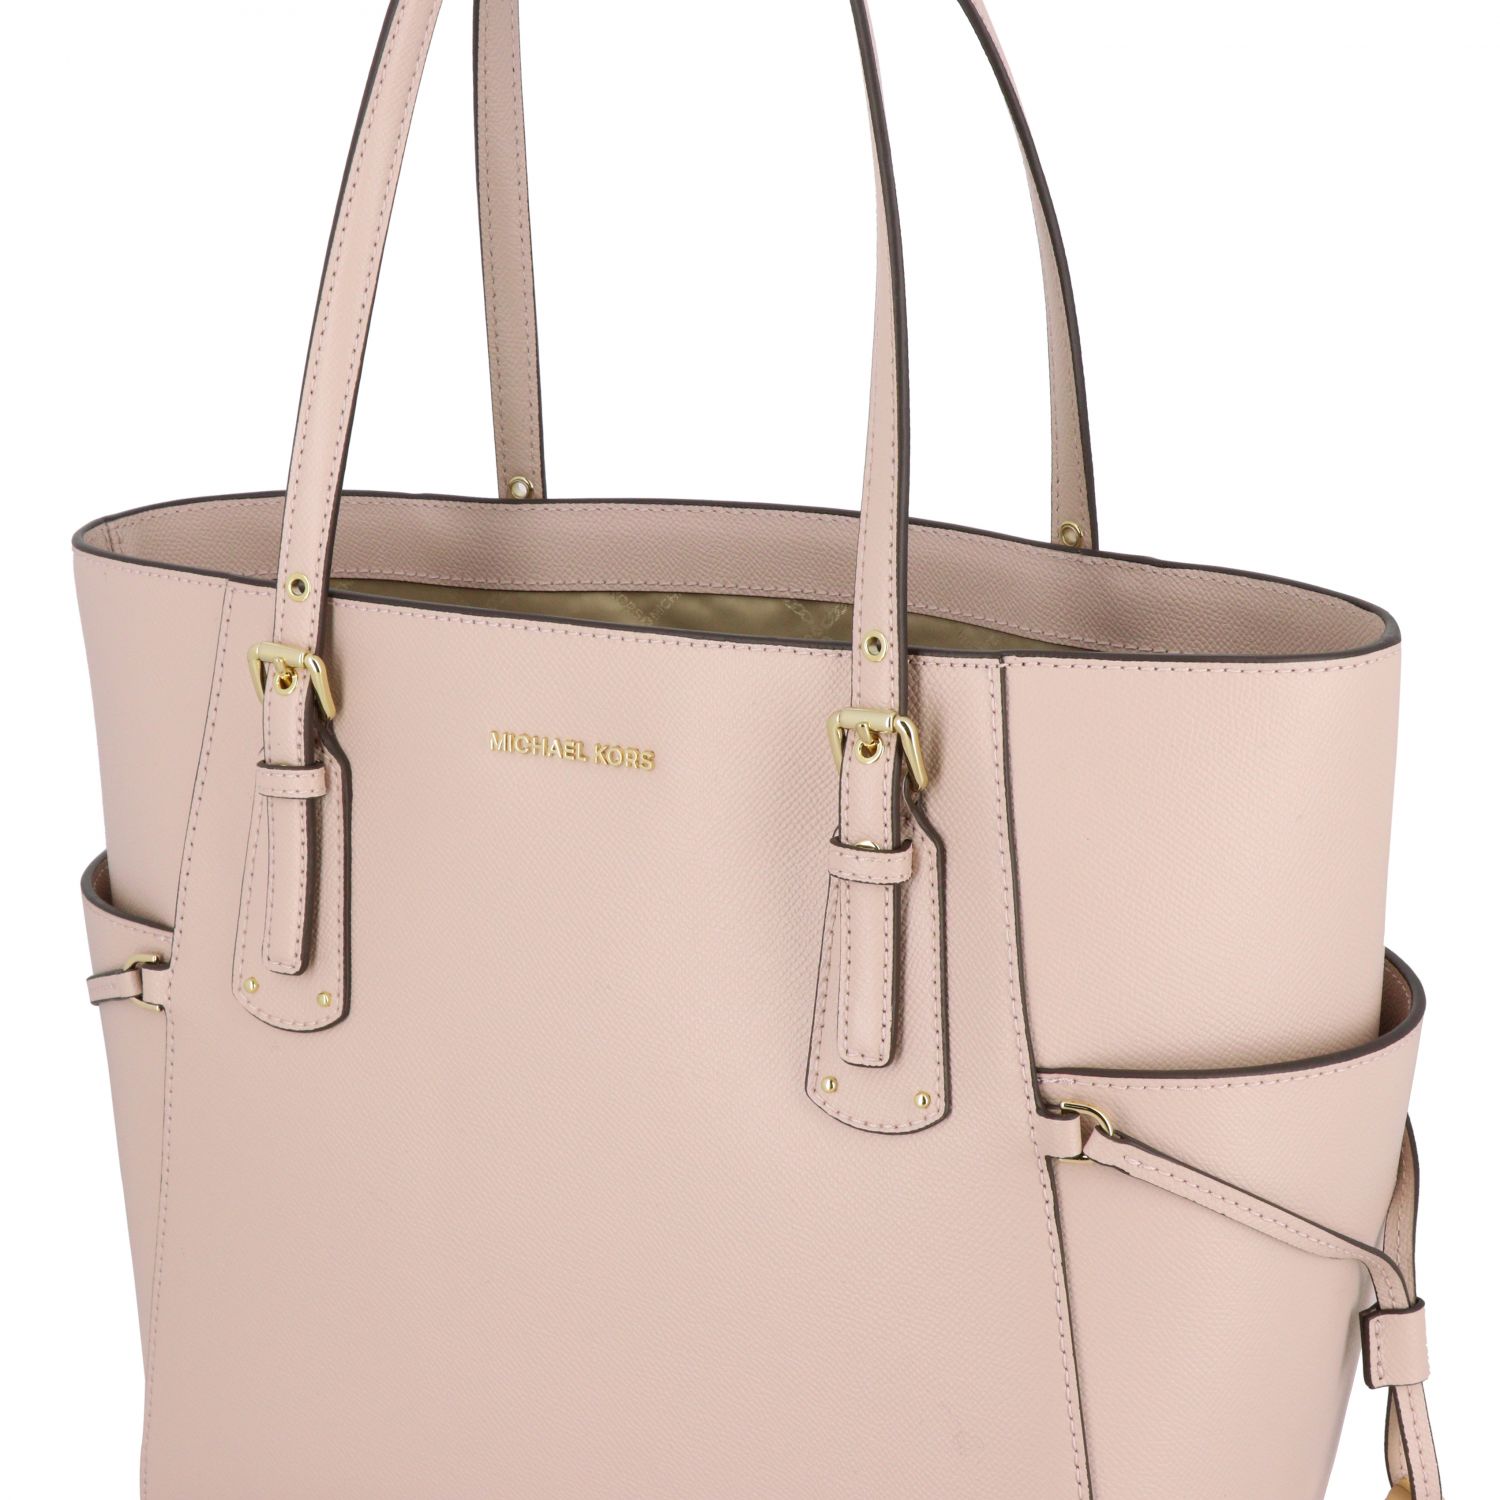 MICHAEL KORS: tote bags for women - Pink | Michael Kors tote bags ...